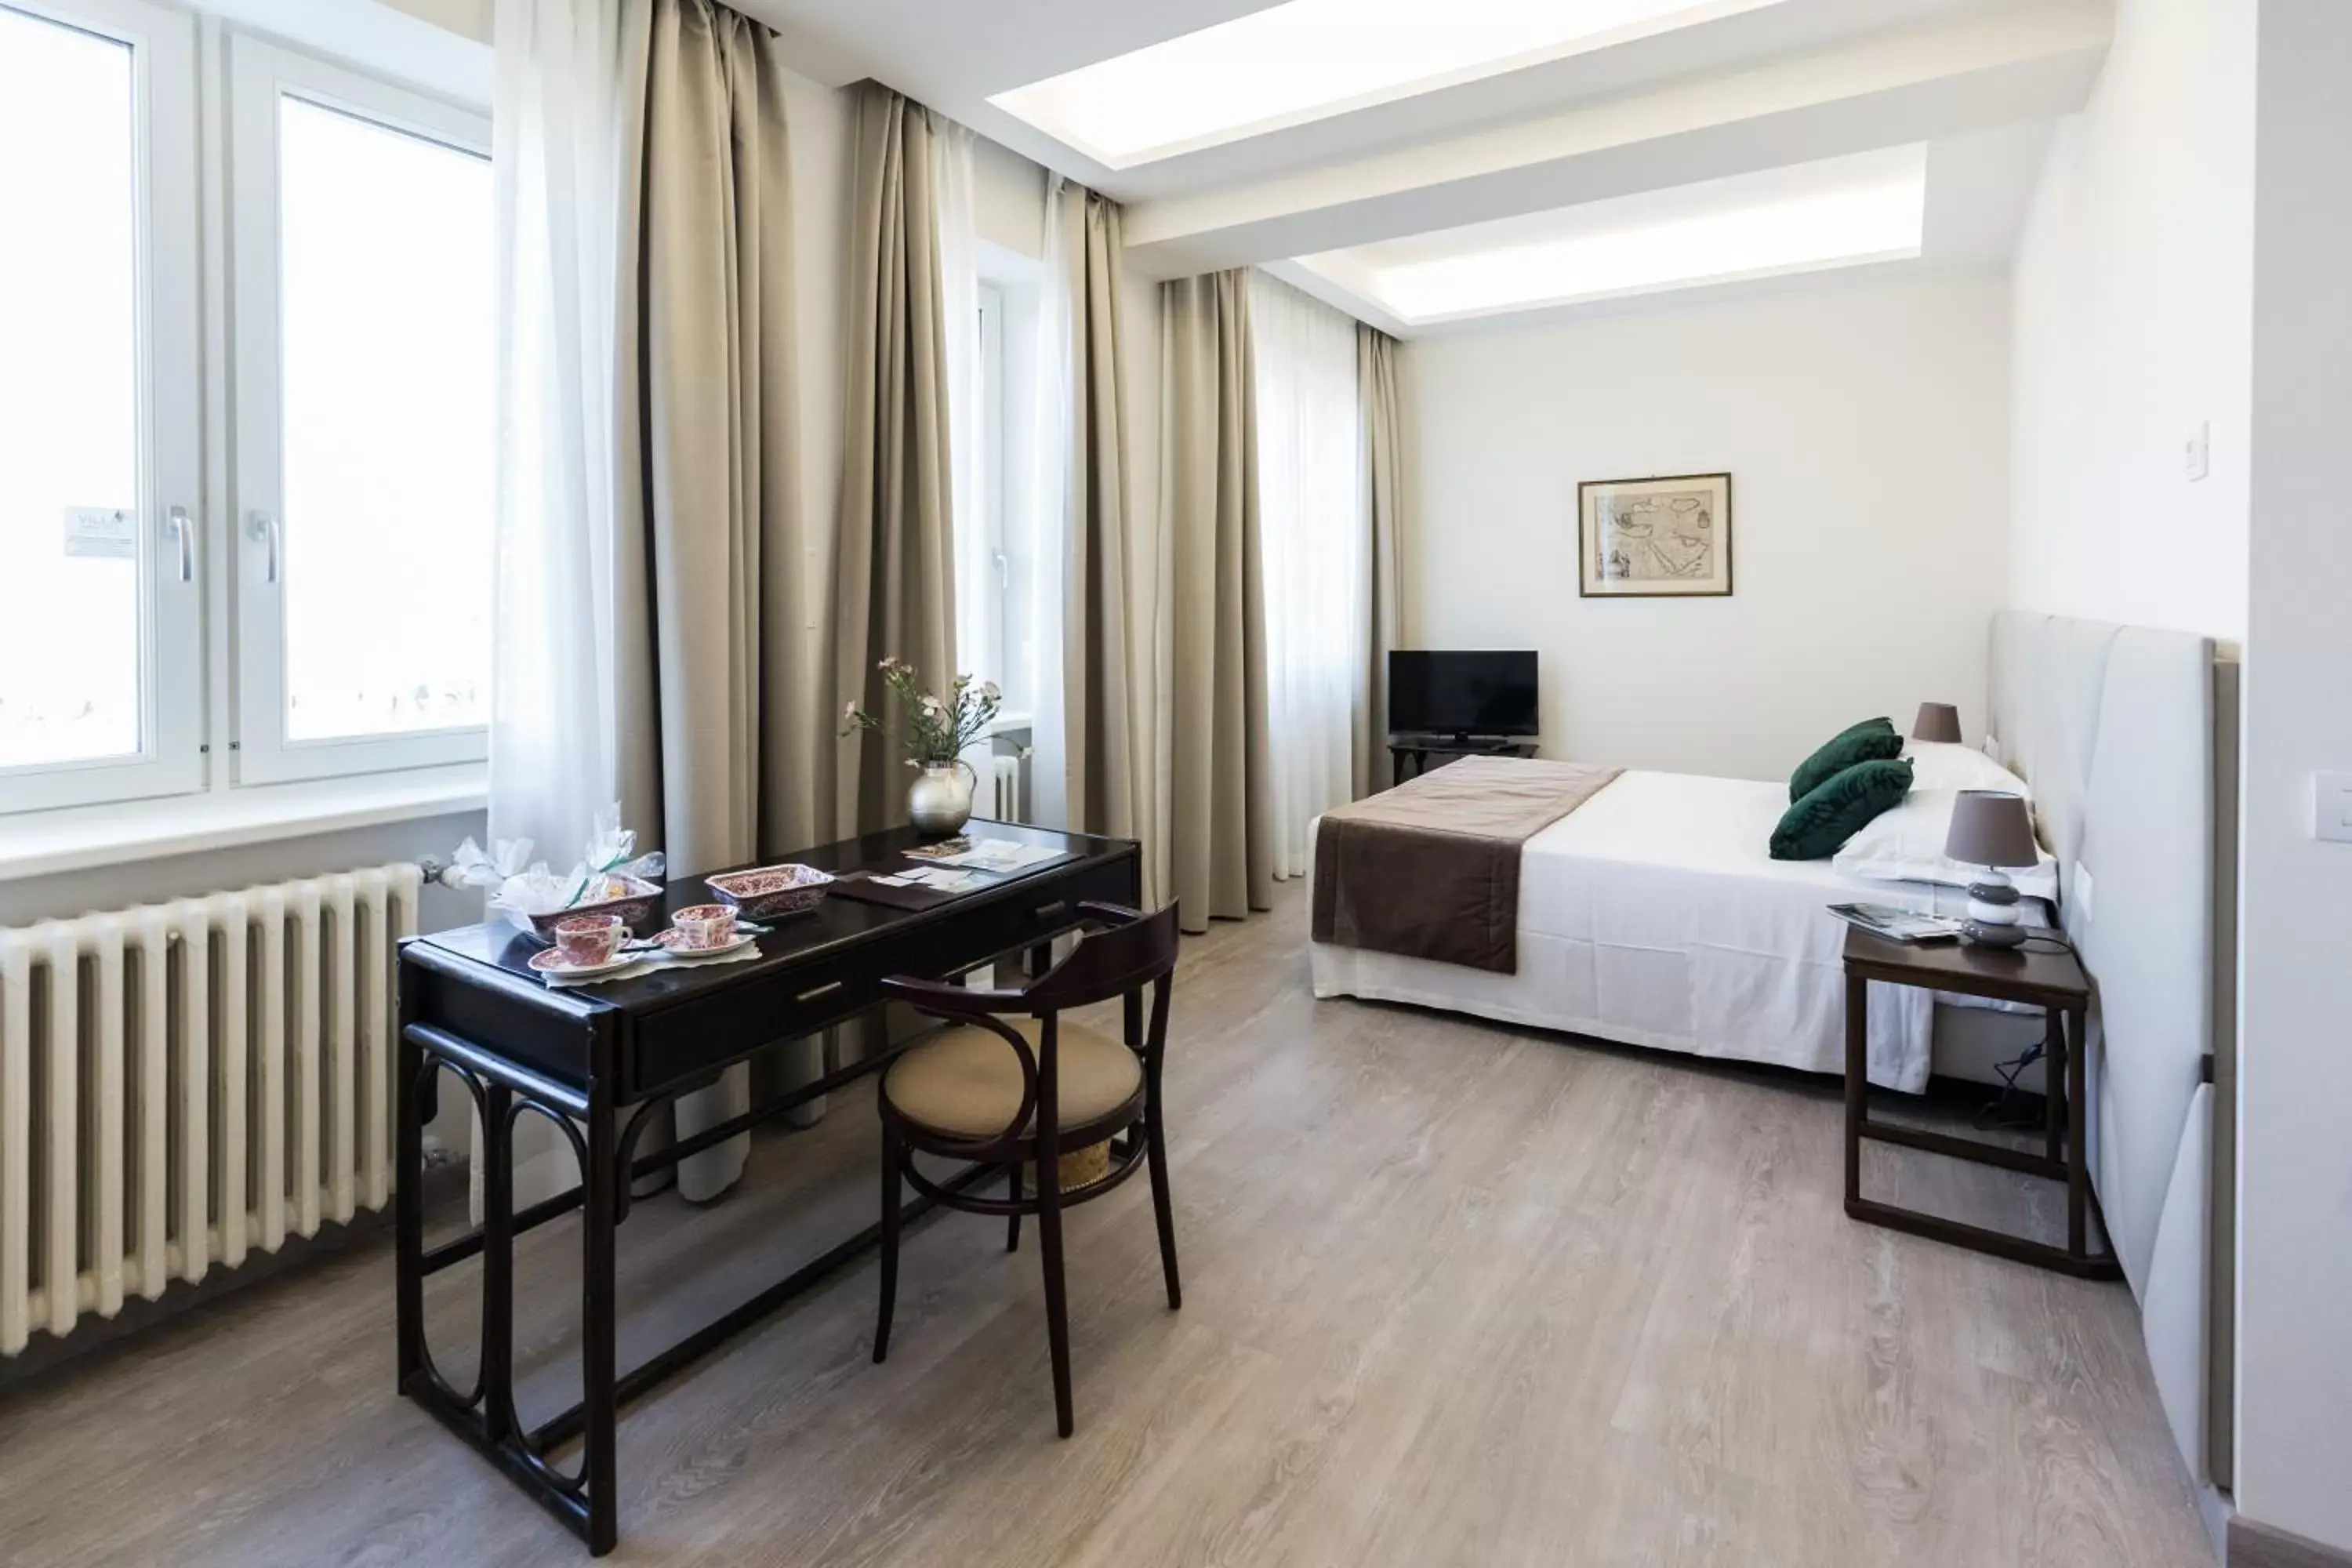 Photo of the whole room in Villa Cavalletti Appartamenti